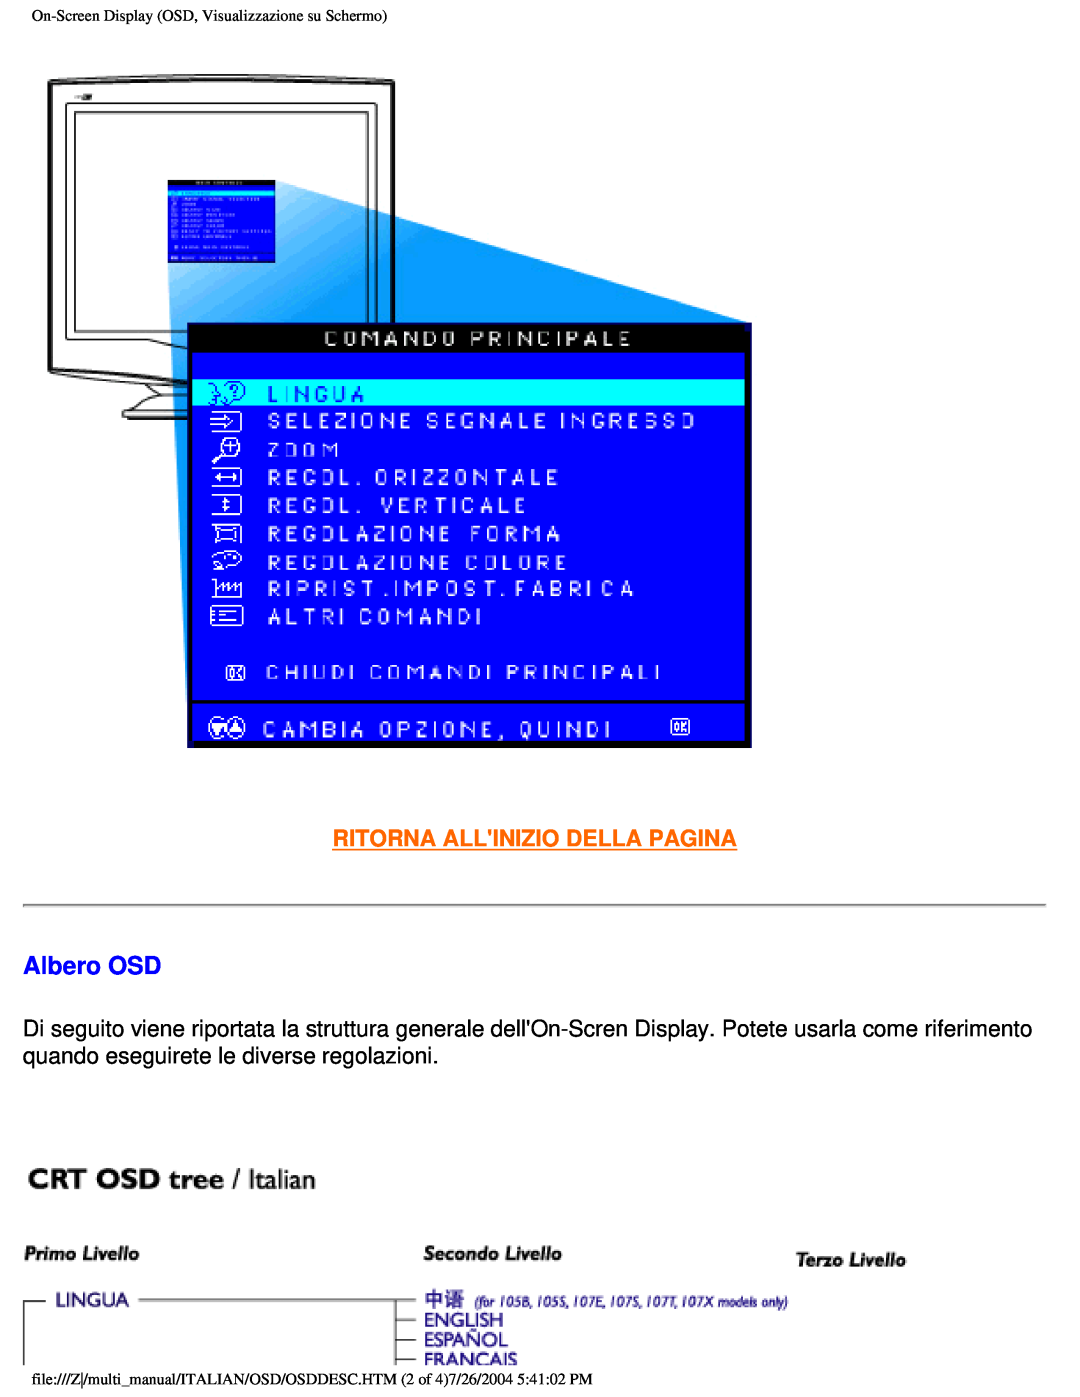 Philips 201B user manual Albero OSD, Ritorna Allinizio Della Pagina, On-ScreenDisplay OSD, Visualizzazione su Schermo 